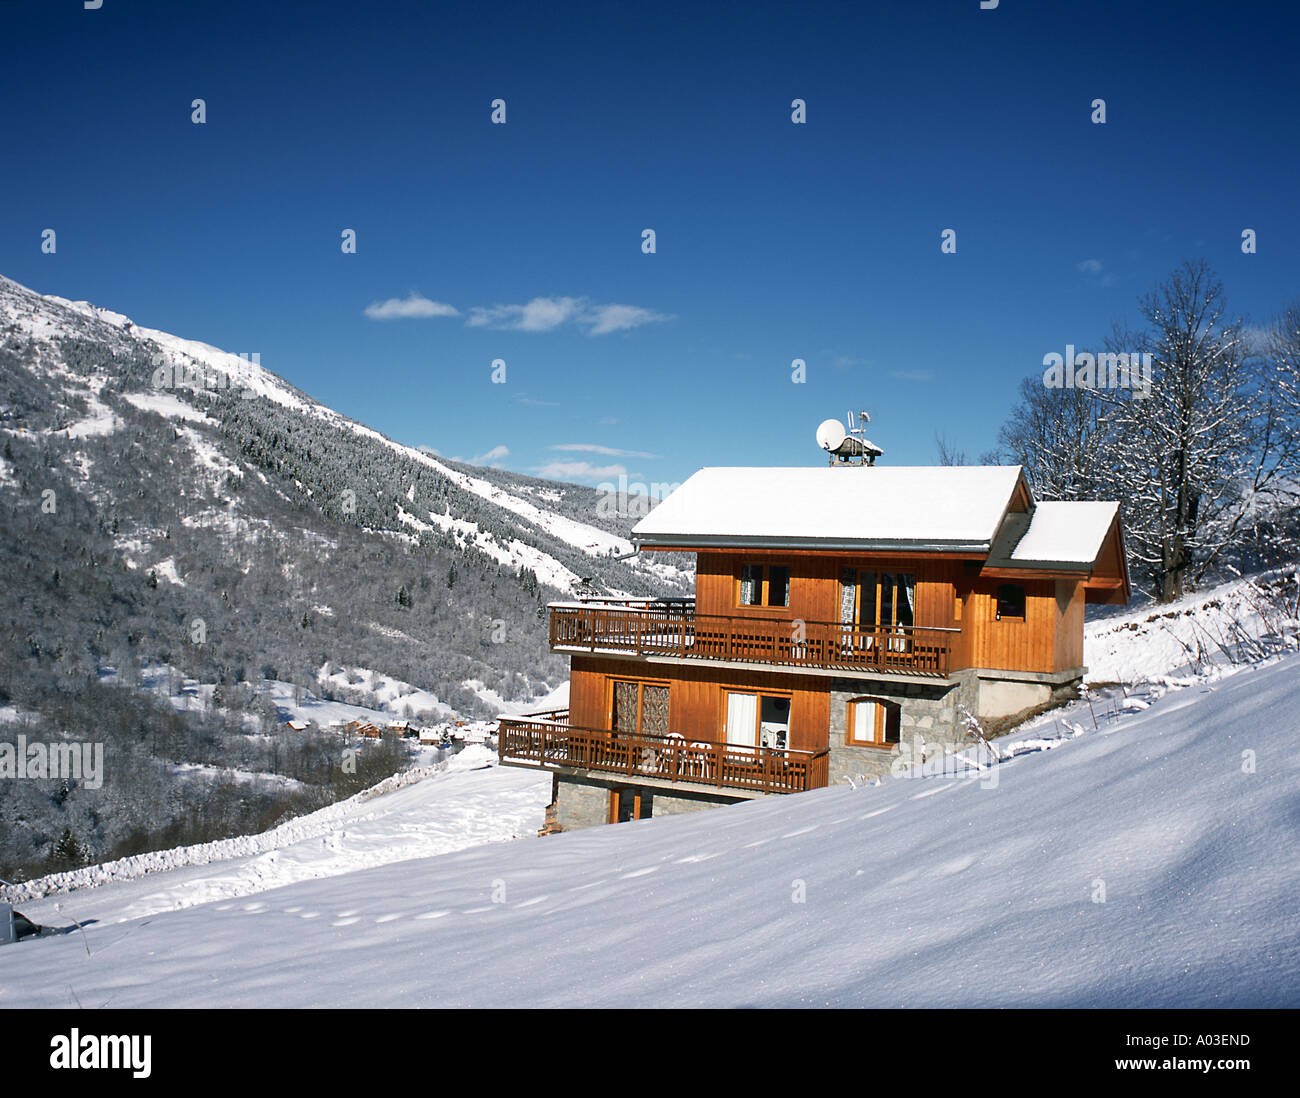 Eine Ski-Hütte in den Alpen Schnee bedeckt vor blauem Himmel Stockfoto